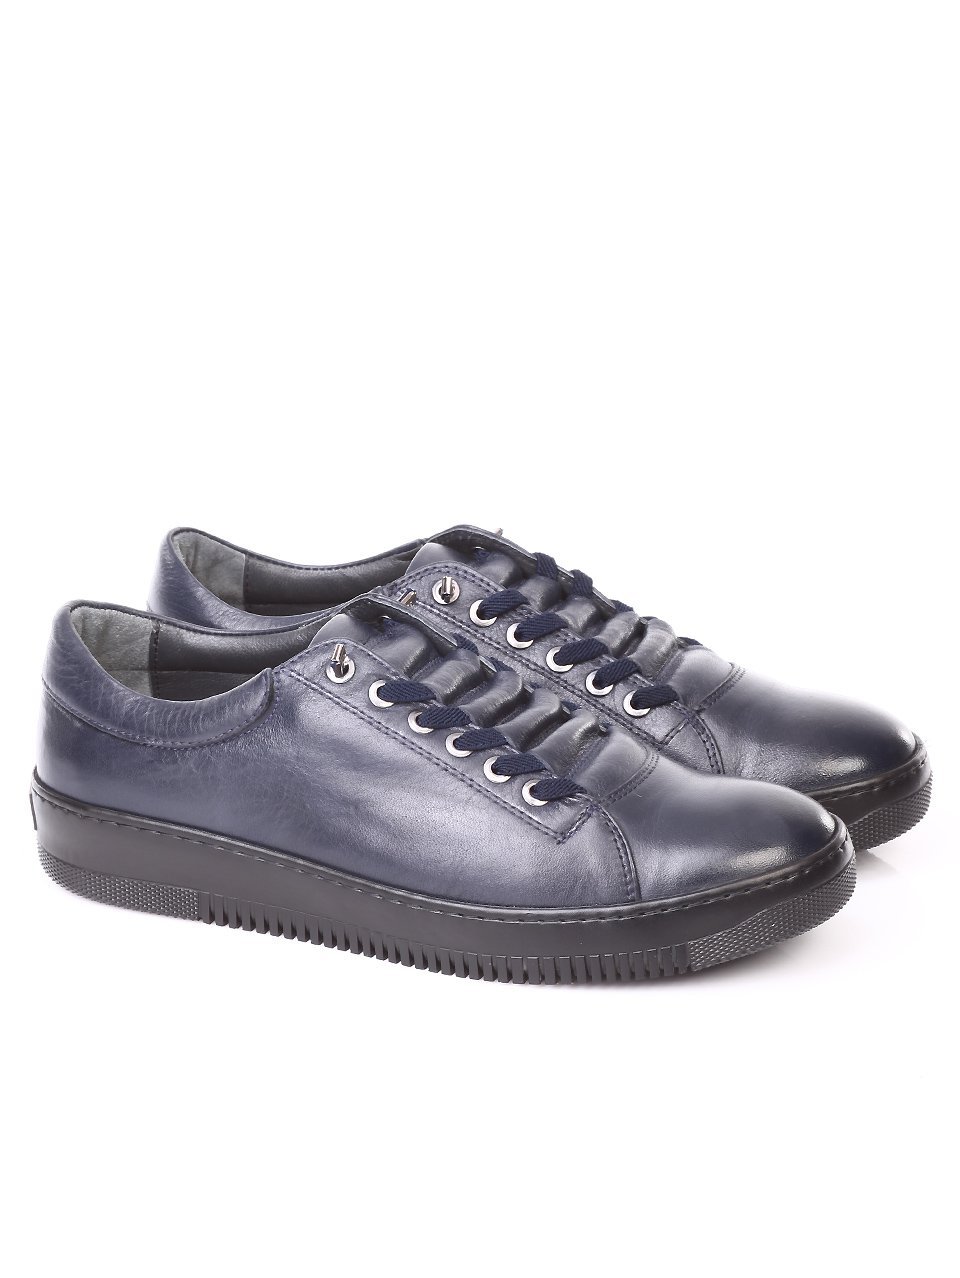 Ежедневни мъжки обувки от естествена кожа в синьо 7AT-171127 blue leather